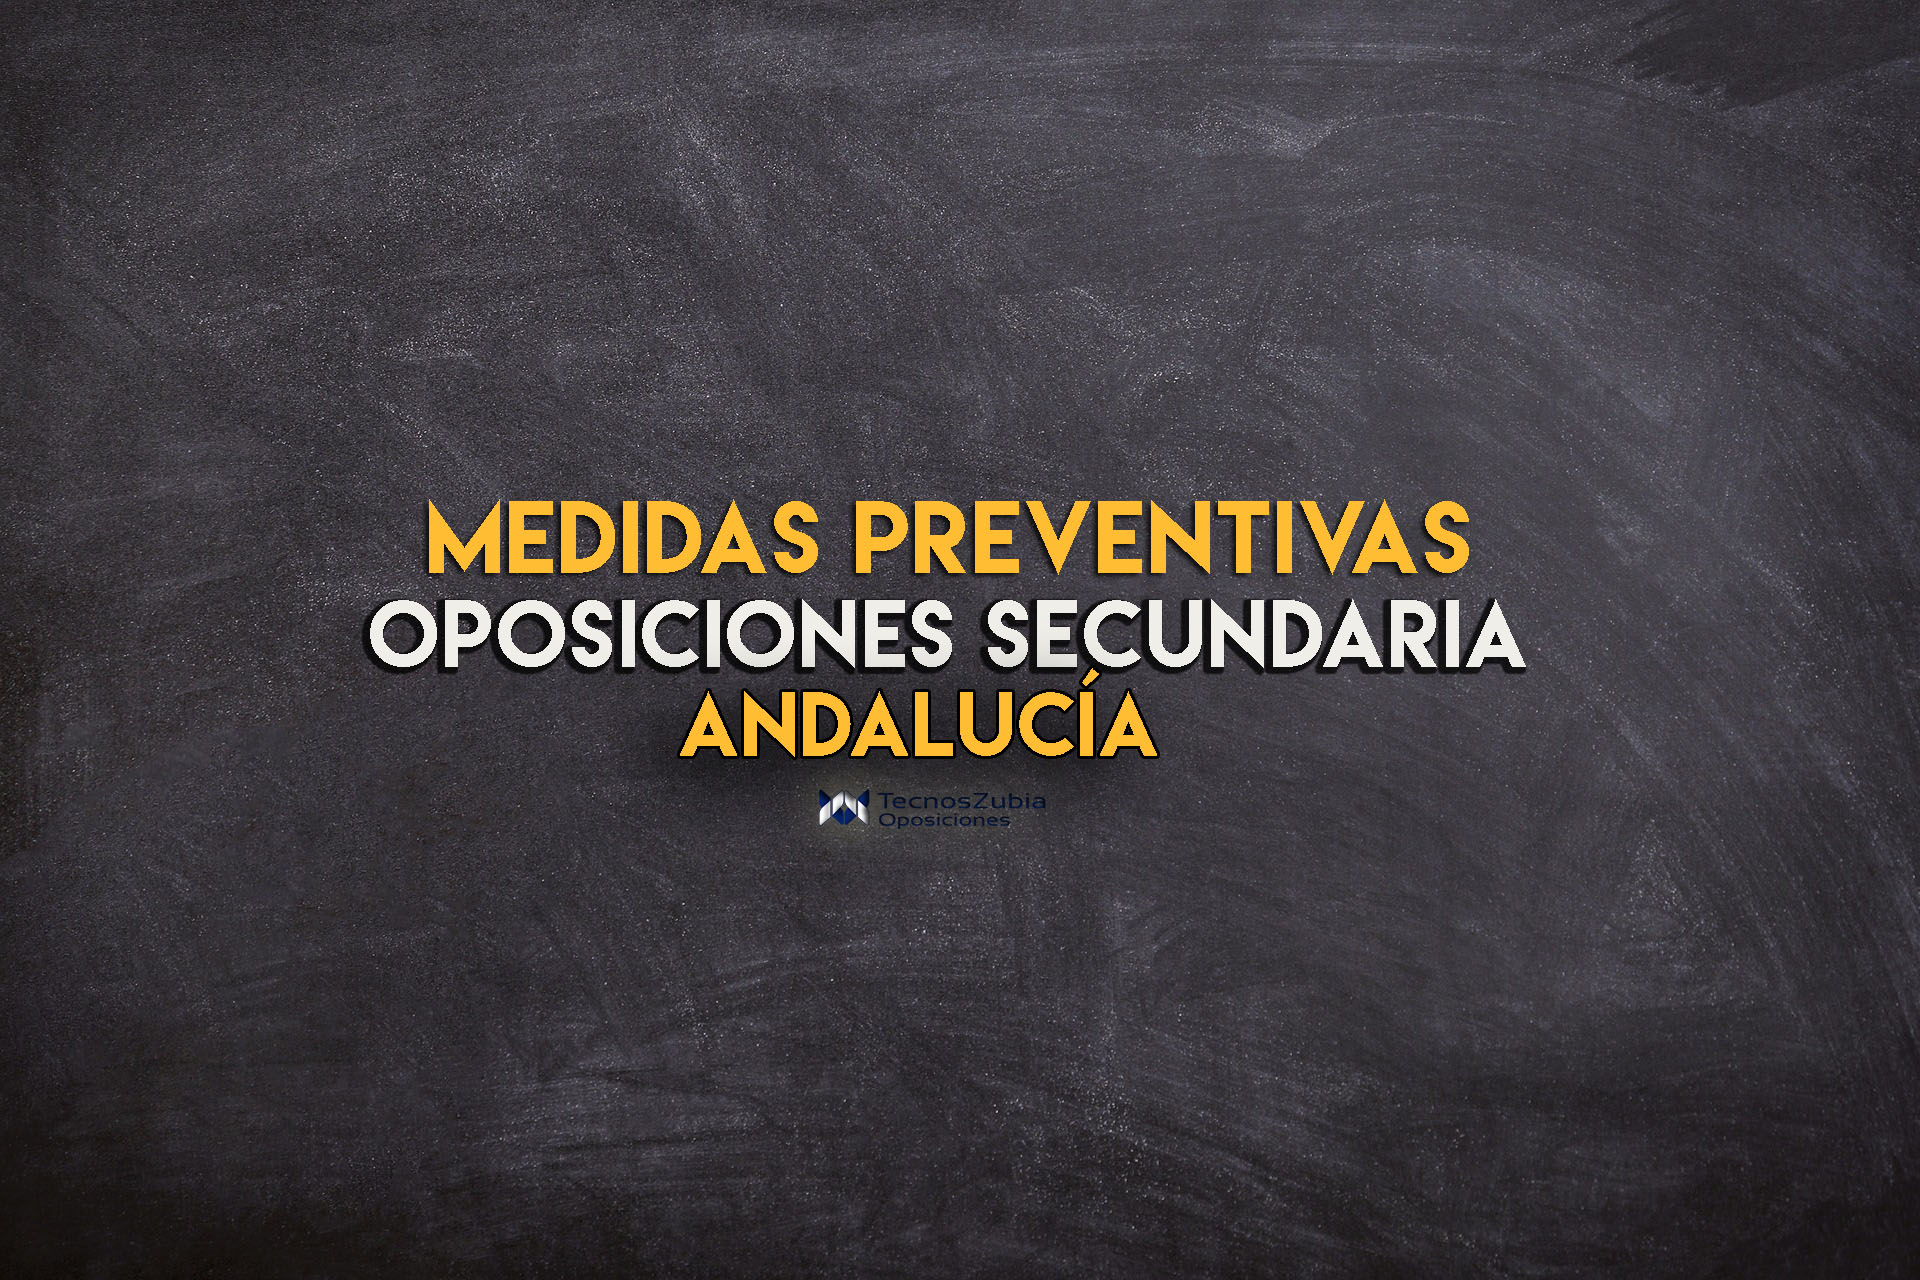 Medidas preventivas oposiciones Andalucía 2021.